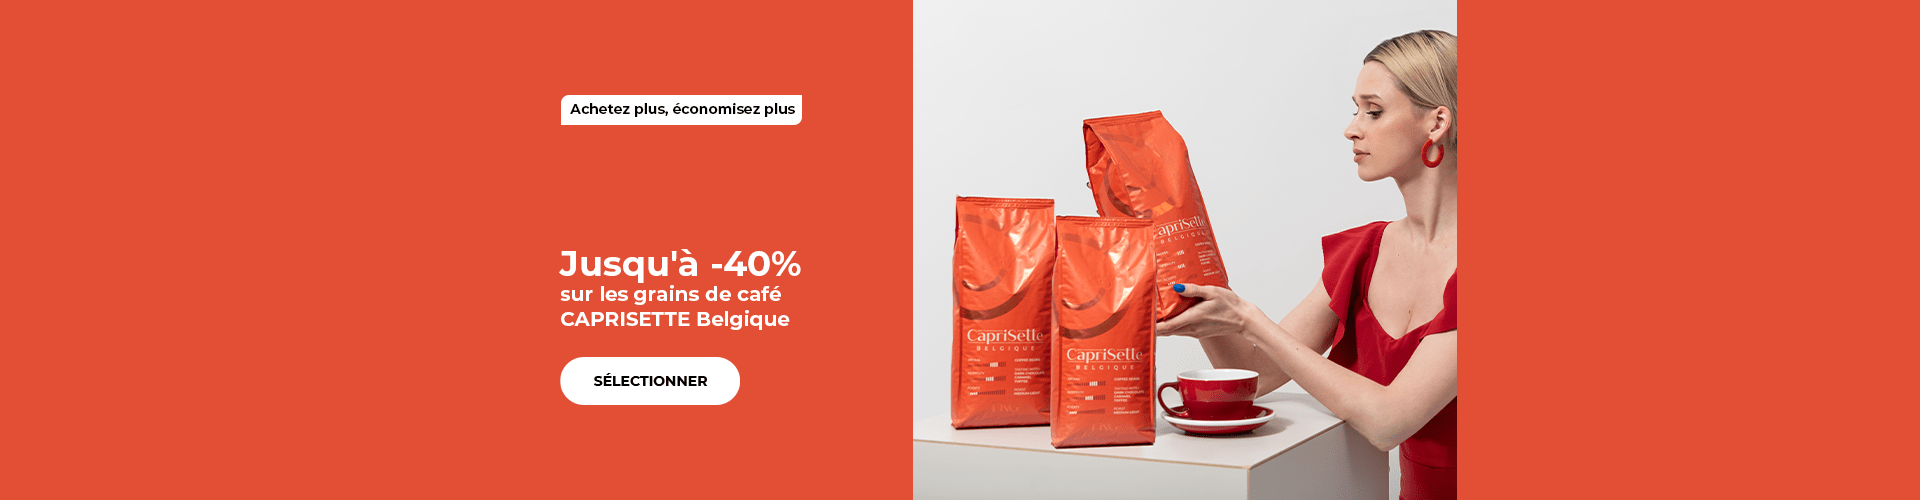 Jusqu'à -40% sur les grains de café CAPRISETTE Belgique